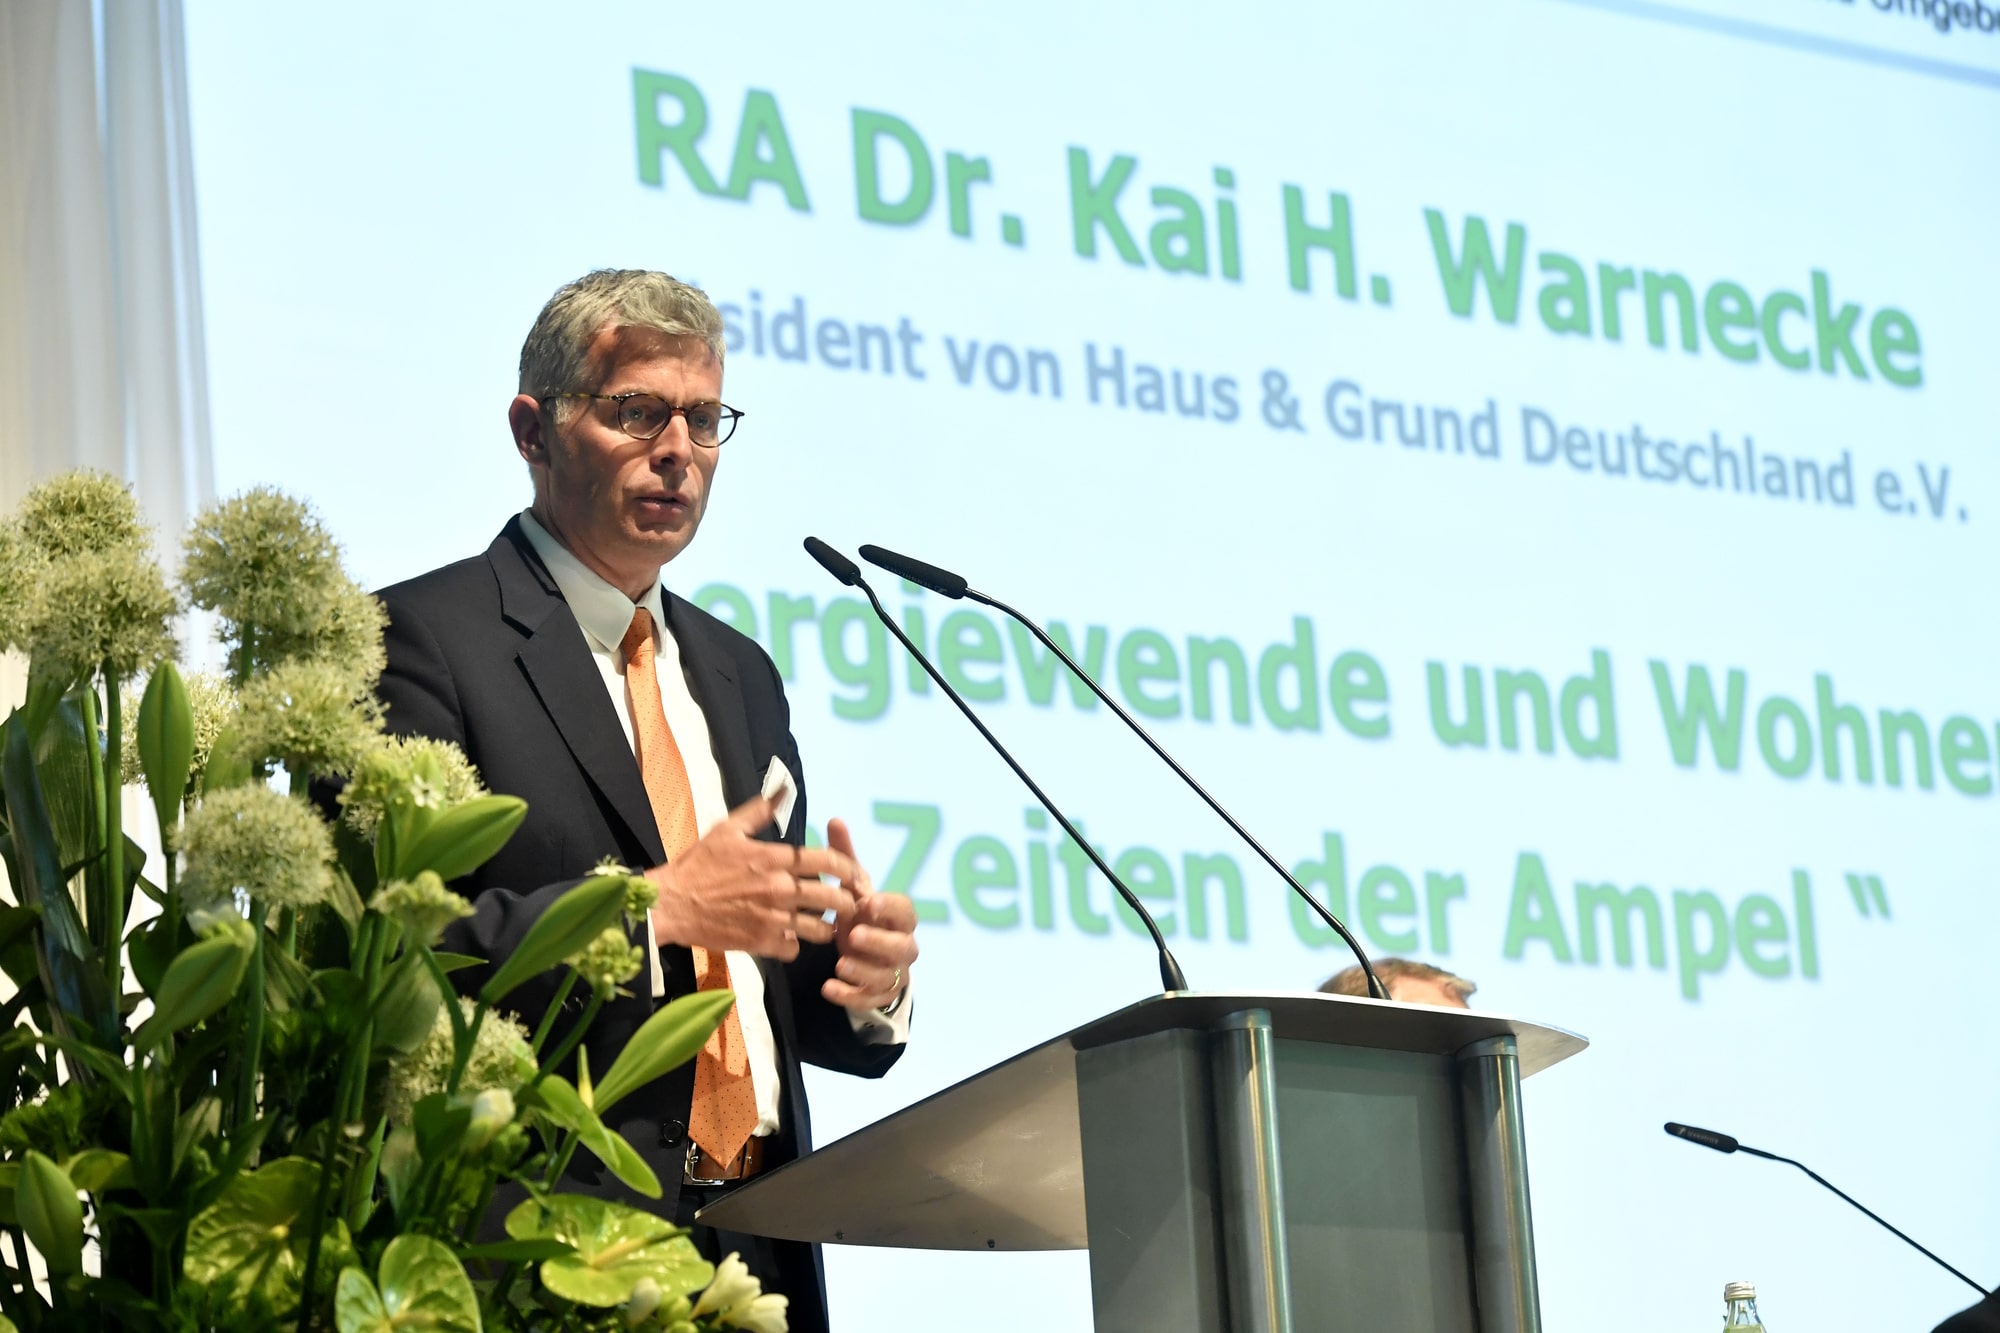 Kritische Worte von Dr. Kai Warnecke zur Energiepolitik der Ampel-Koalition